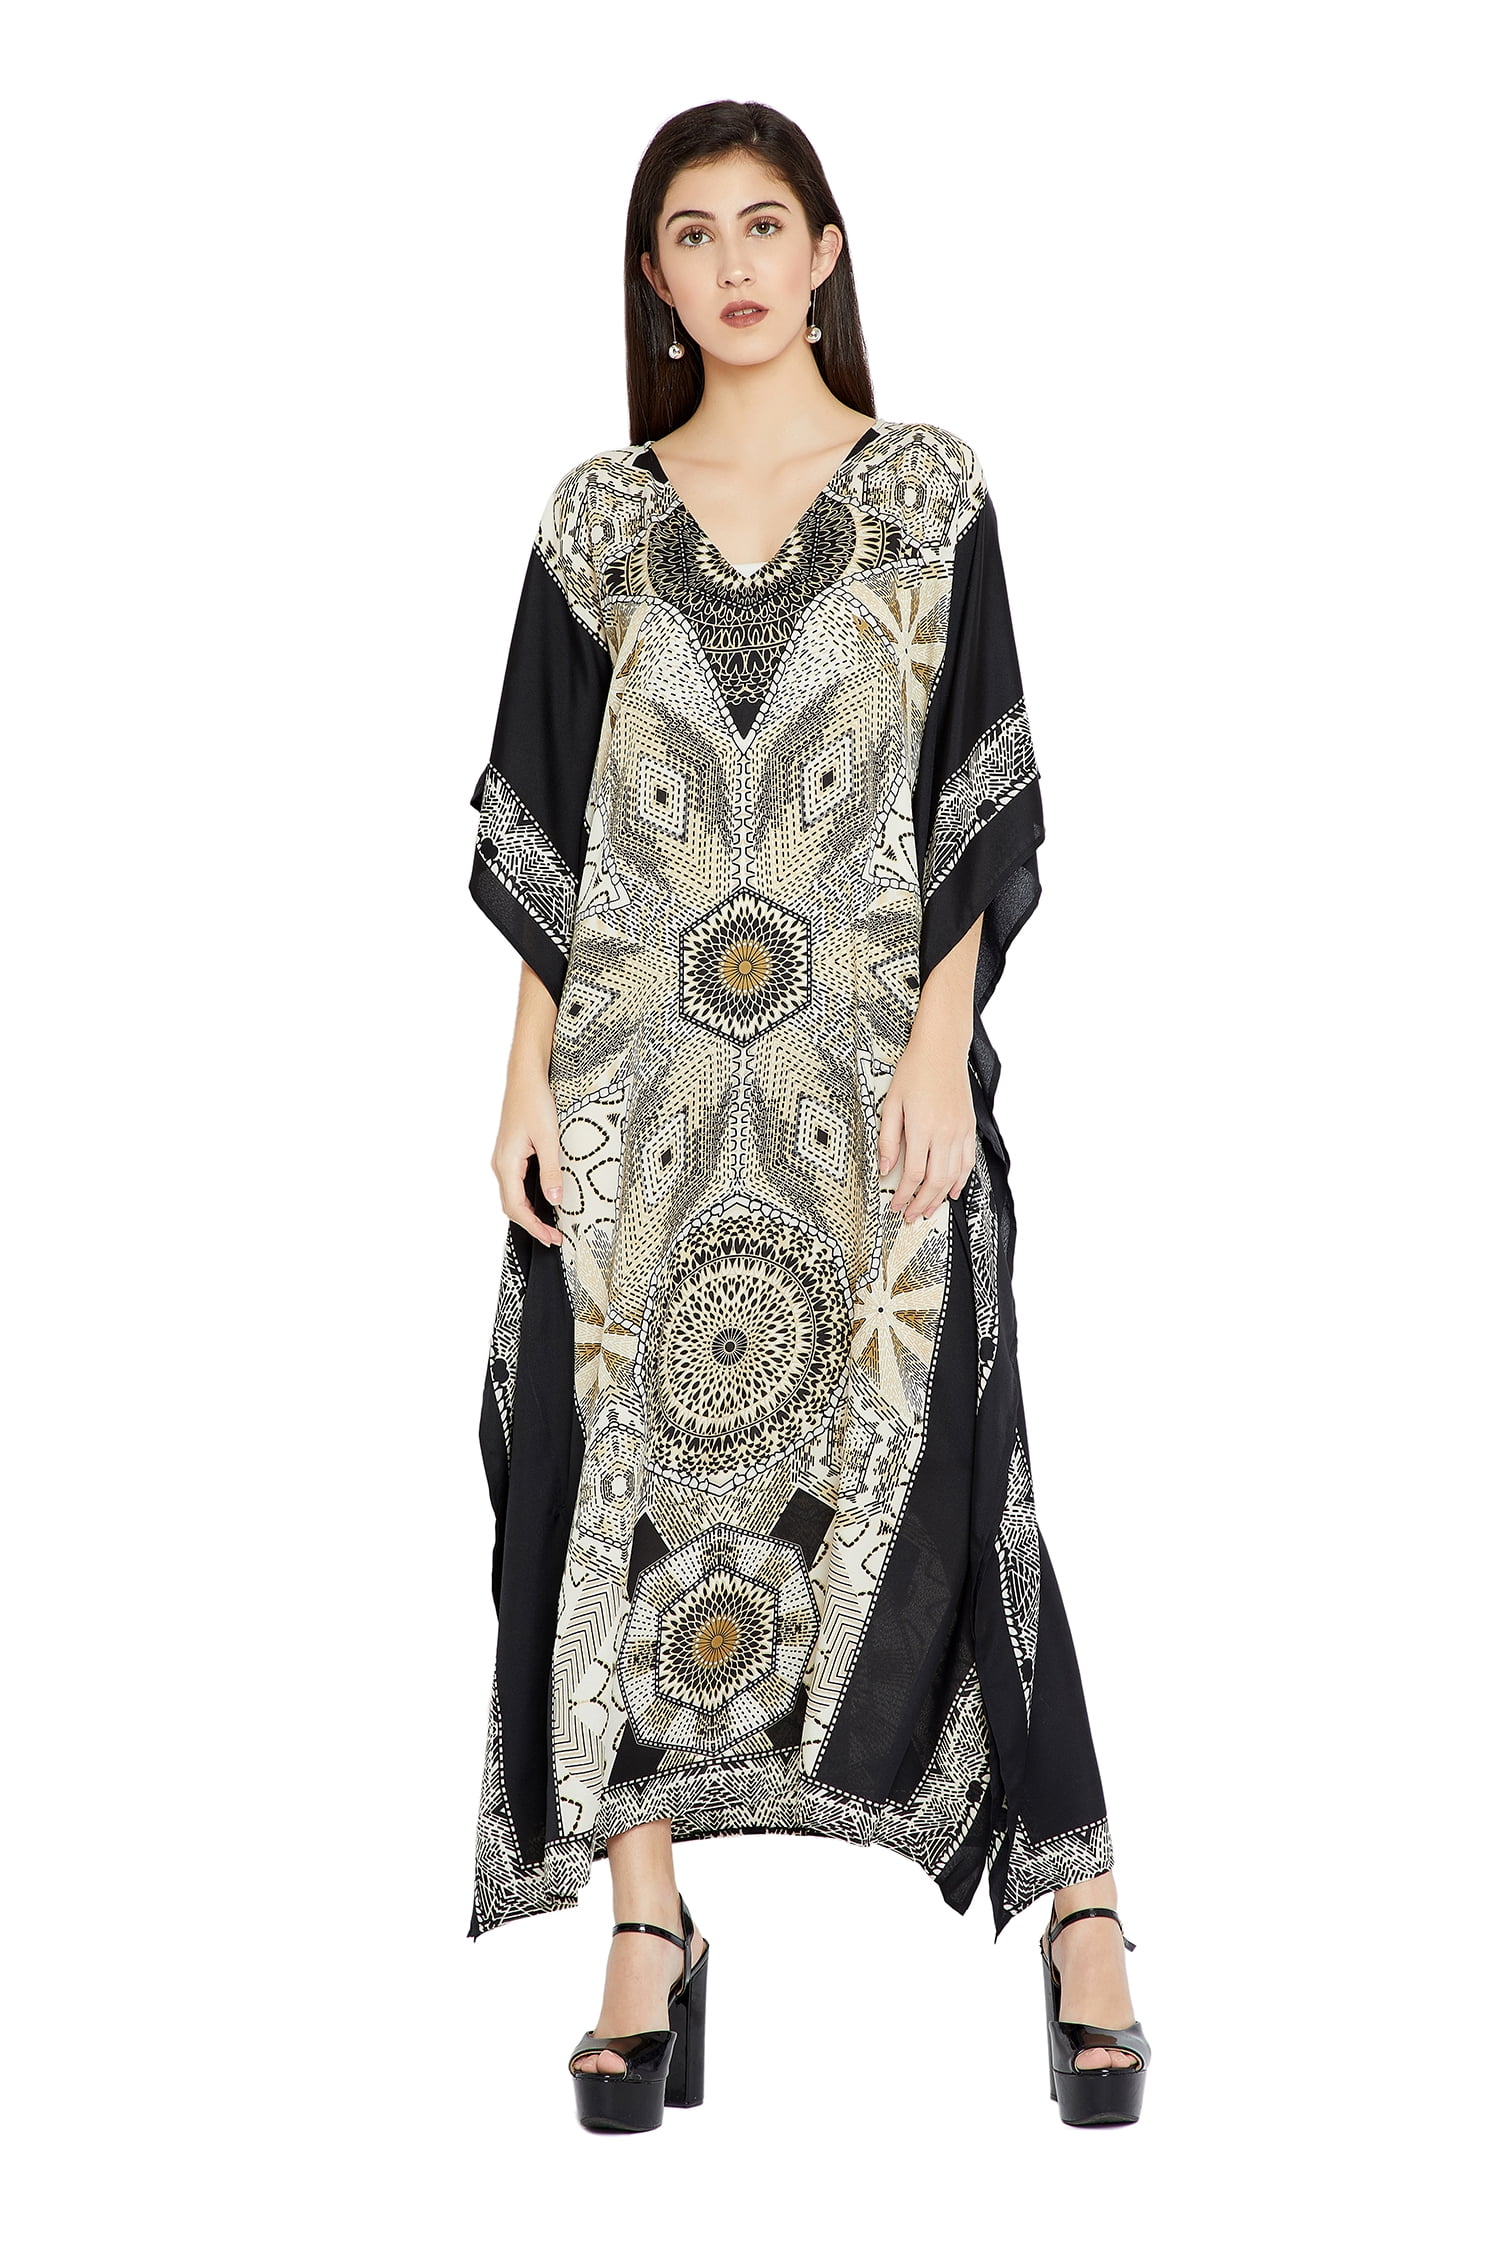 Off-White Floral Print Long Kaftan Women Dress Plus Size Clothing Maxi Dress